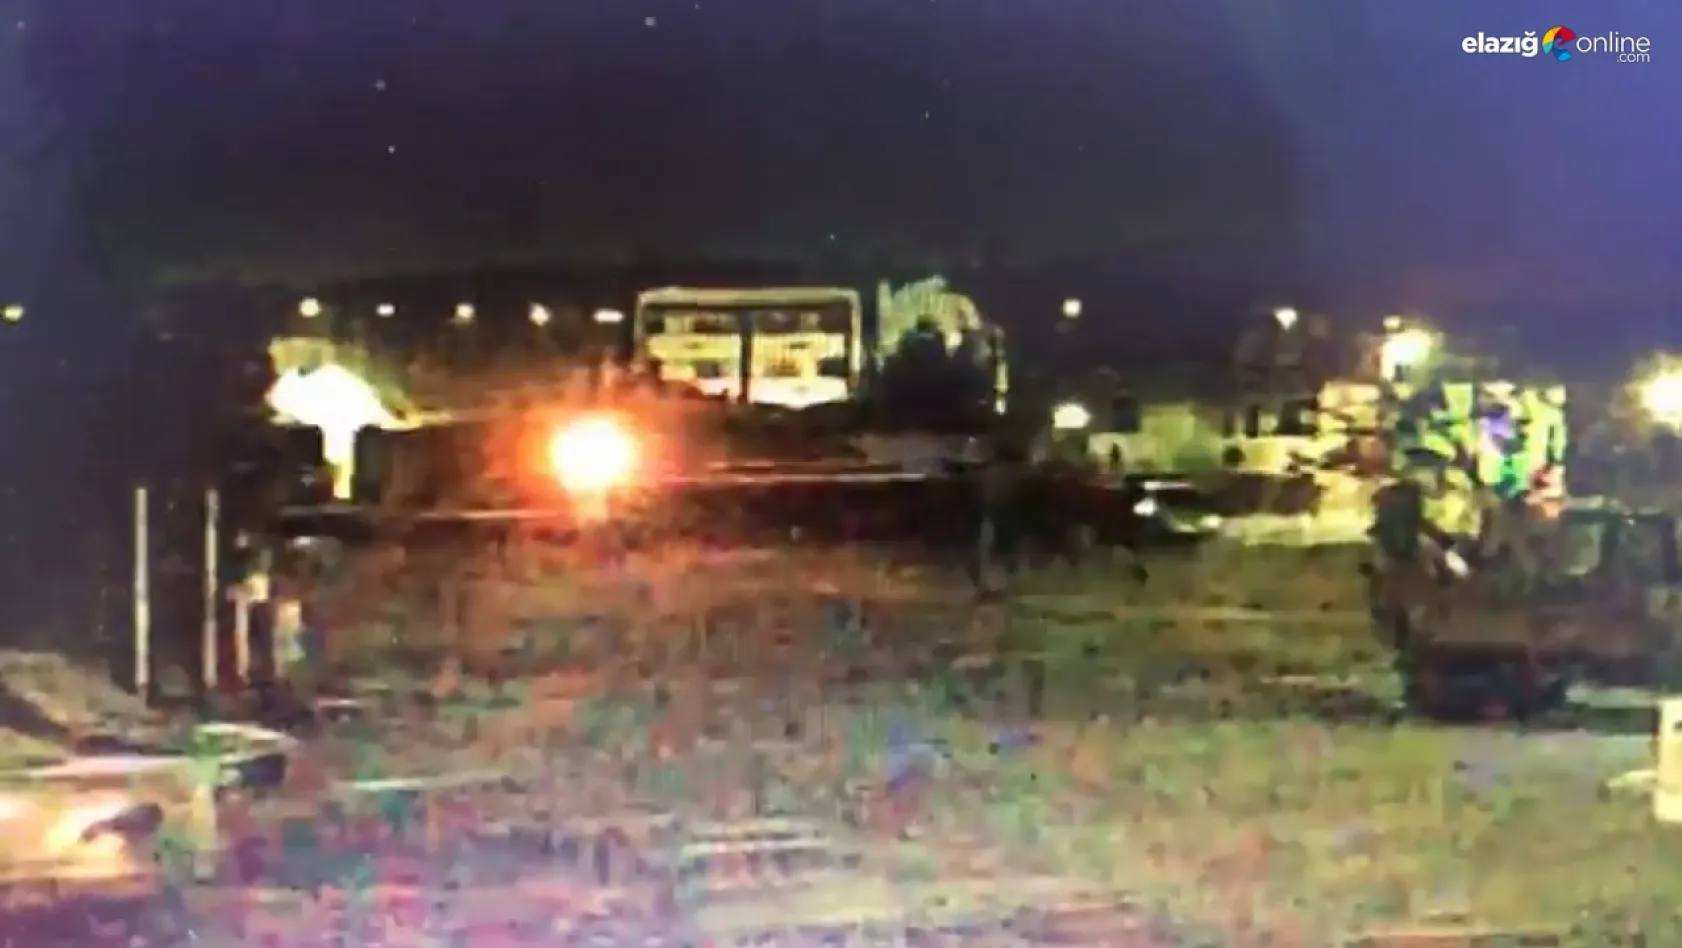 Elazığ'da trenin araca çarptığı kazanın görüntüleri ortaya çıktı